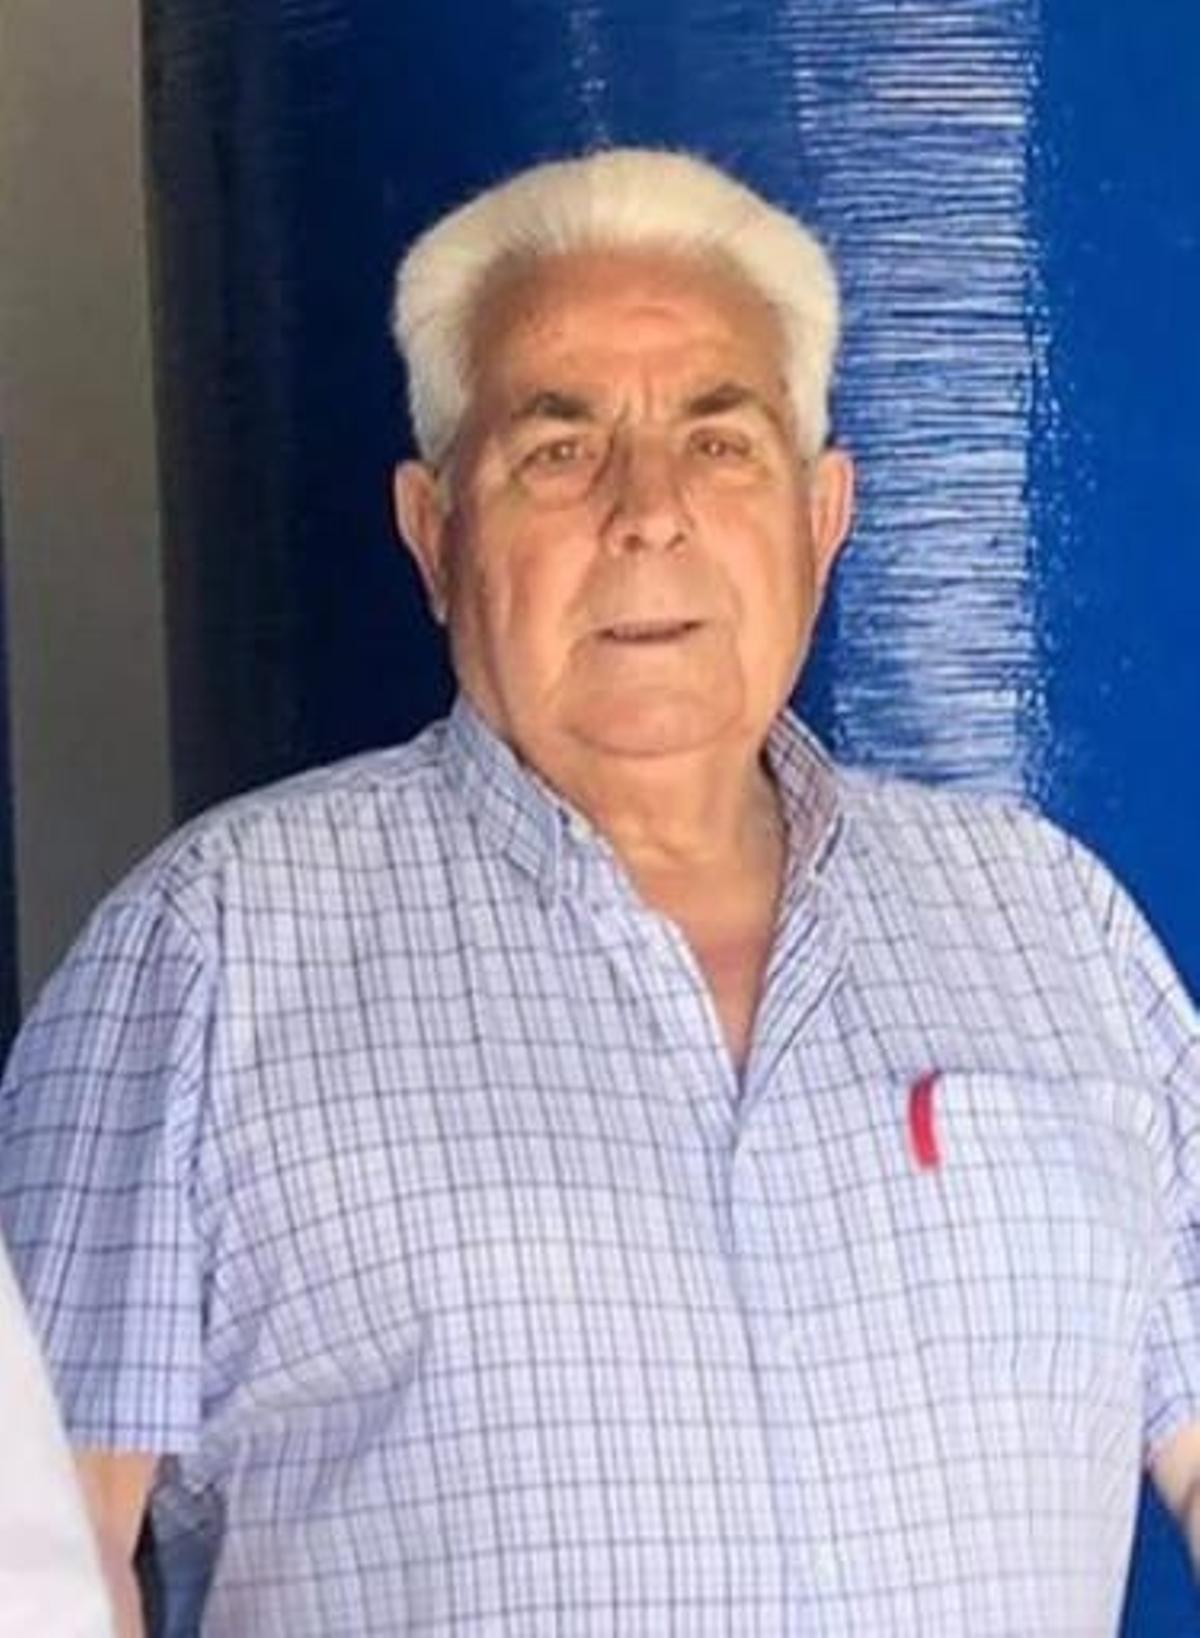 Santiago Campo Alfonso, actual alcalde de Losacio, no se presenta a las elecciones.